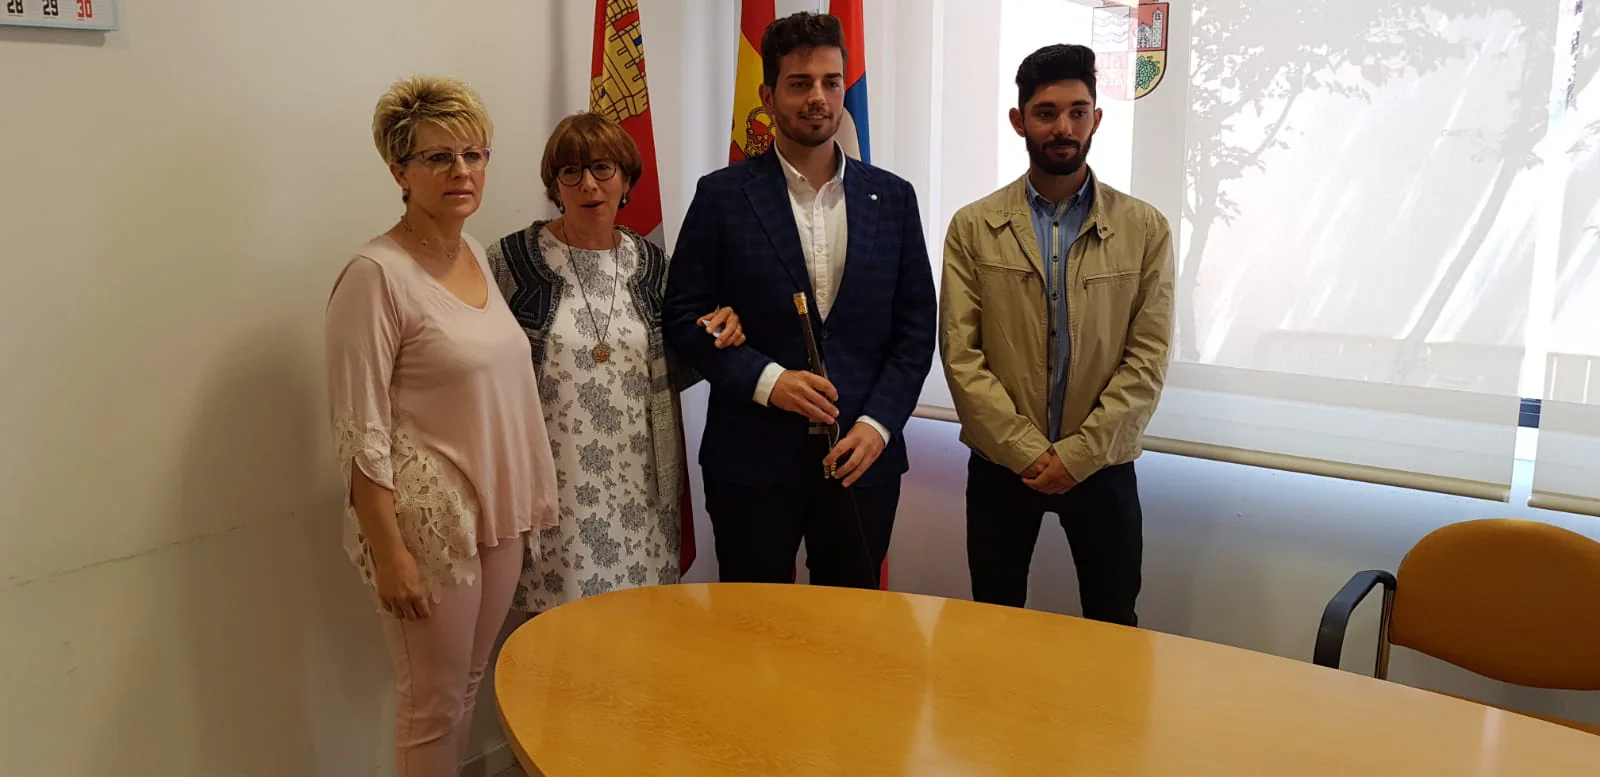 Gonzalo Peinador jura el cargo en Corcos del Valle y se proclama como nuevo regidor del municipio representando al Partido Popular.